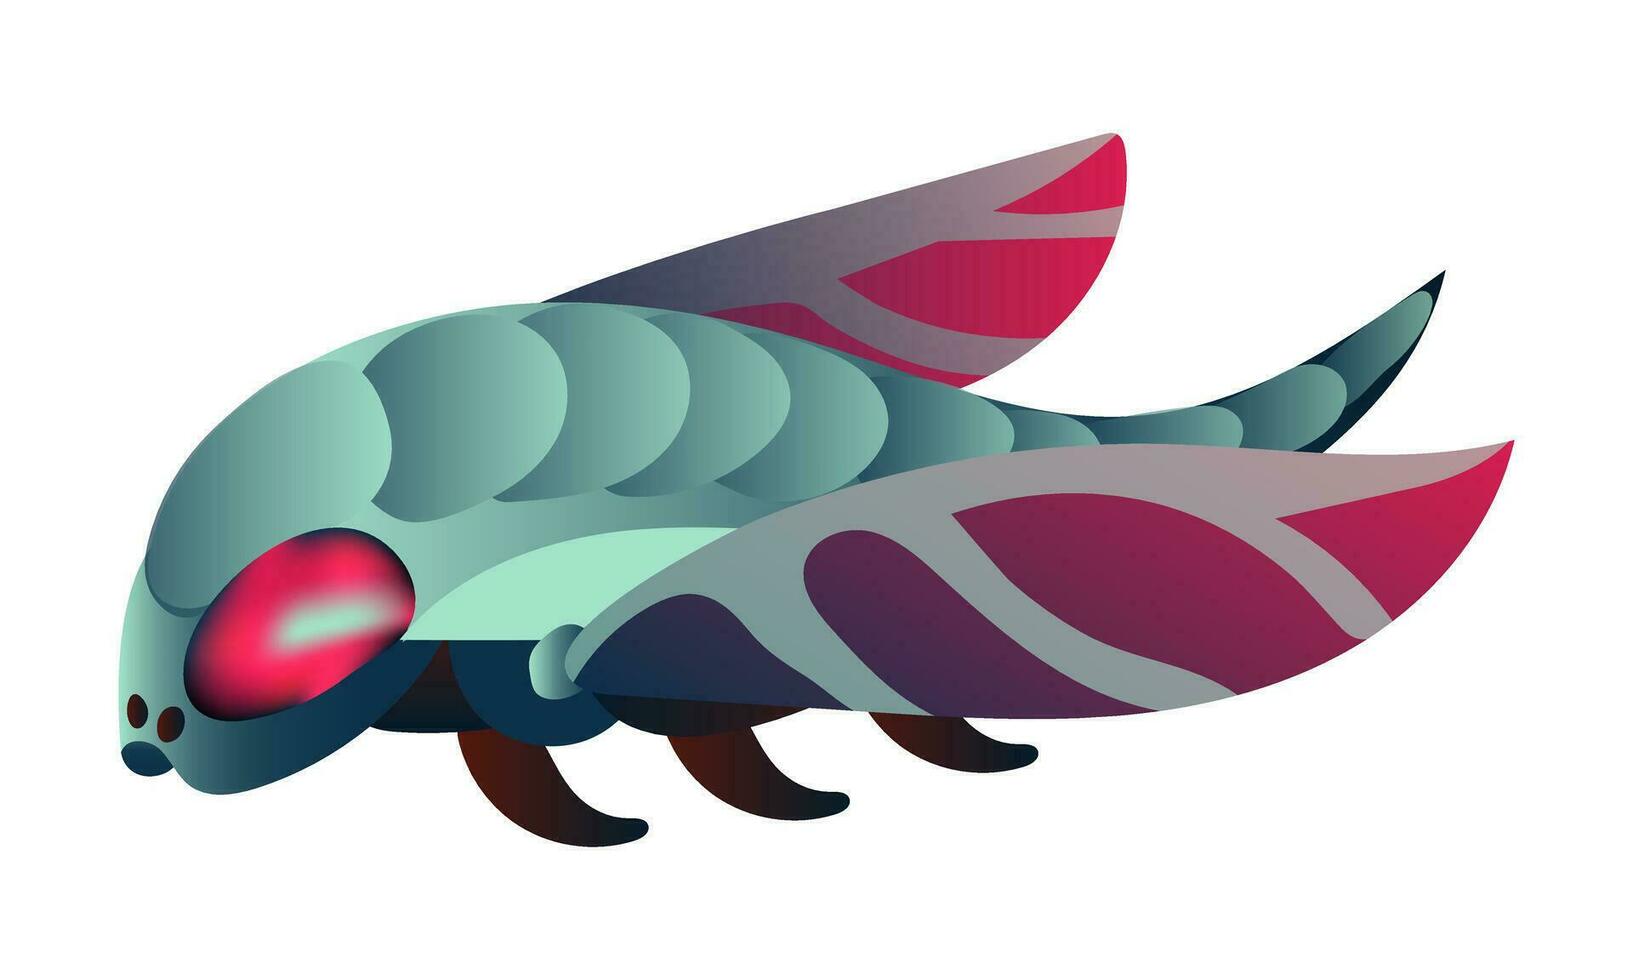 en Plats insekt i de form av en flyga. en mekanisk insekt i blå och rosa färger är isolerat på en vit bakgrund. vektor lutning illustration av ett utomjording insekt